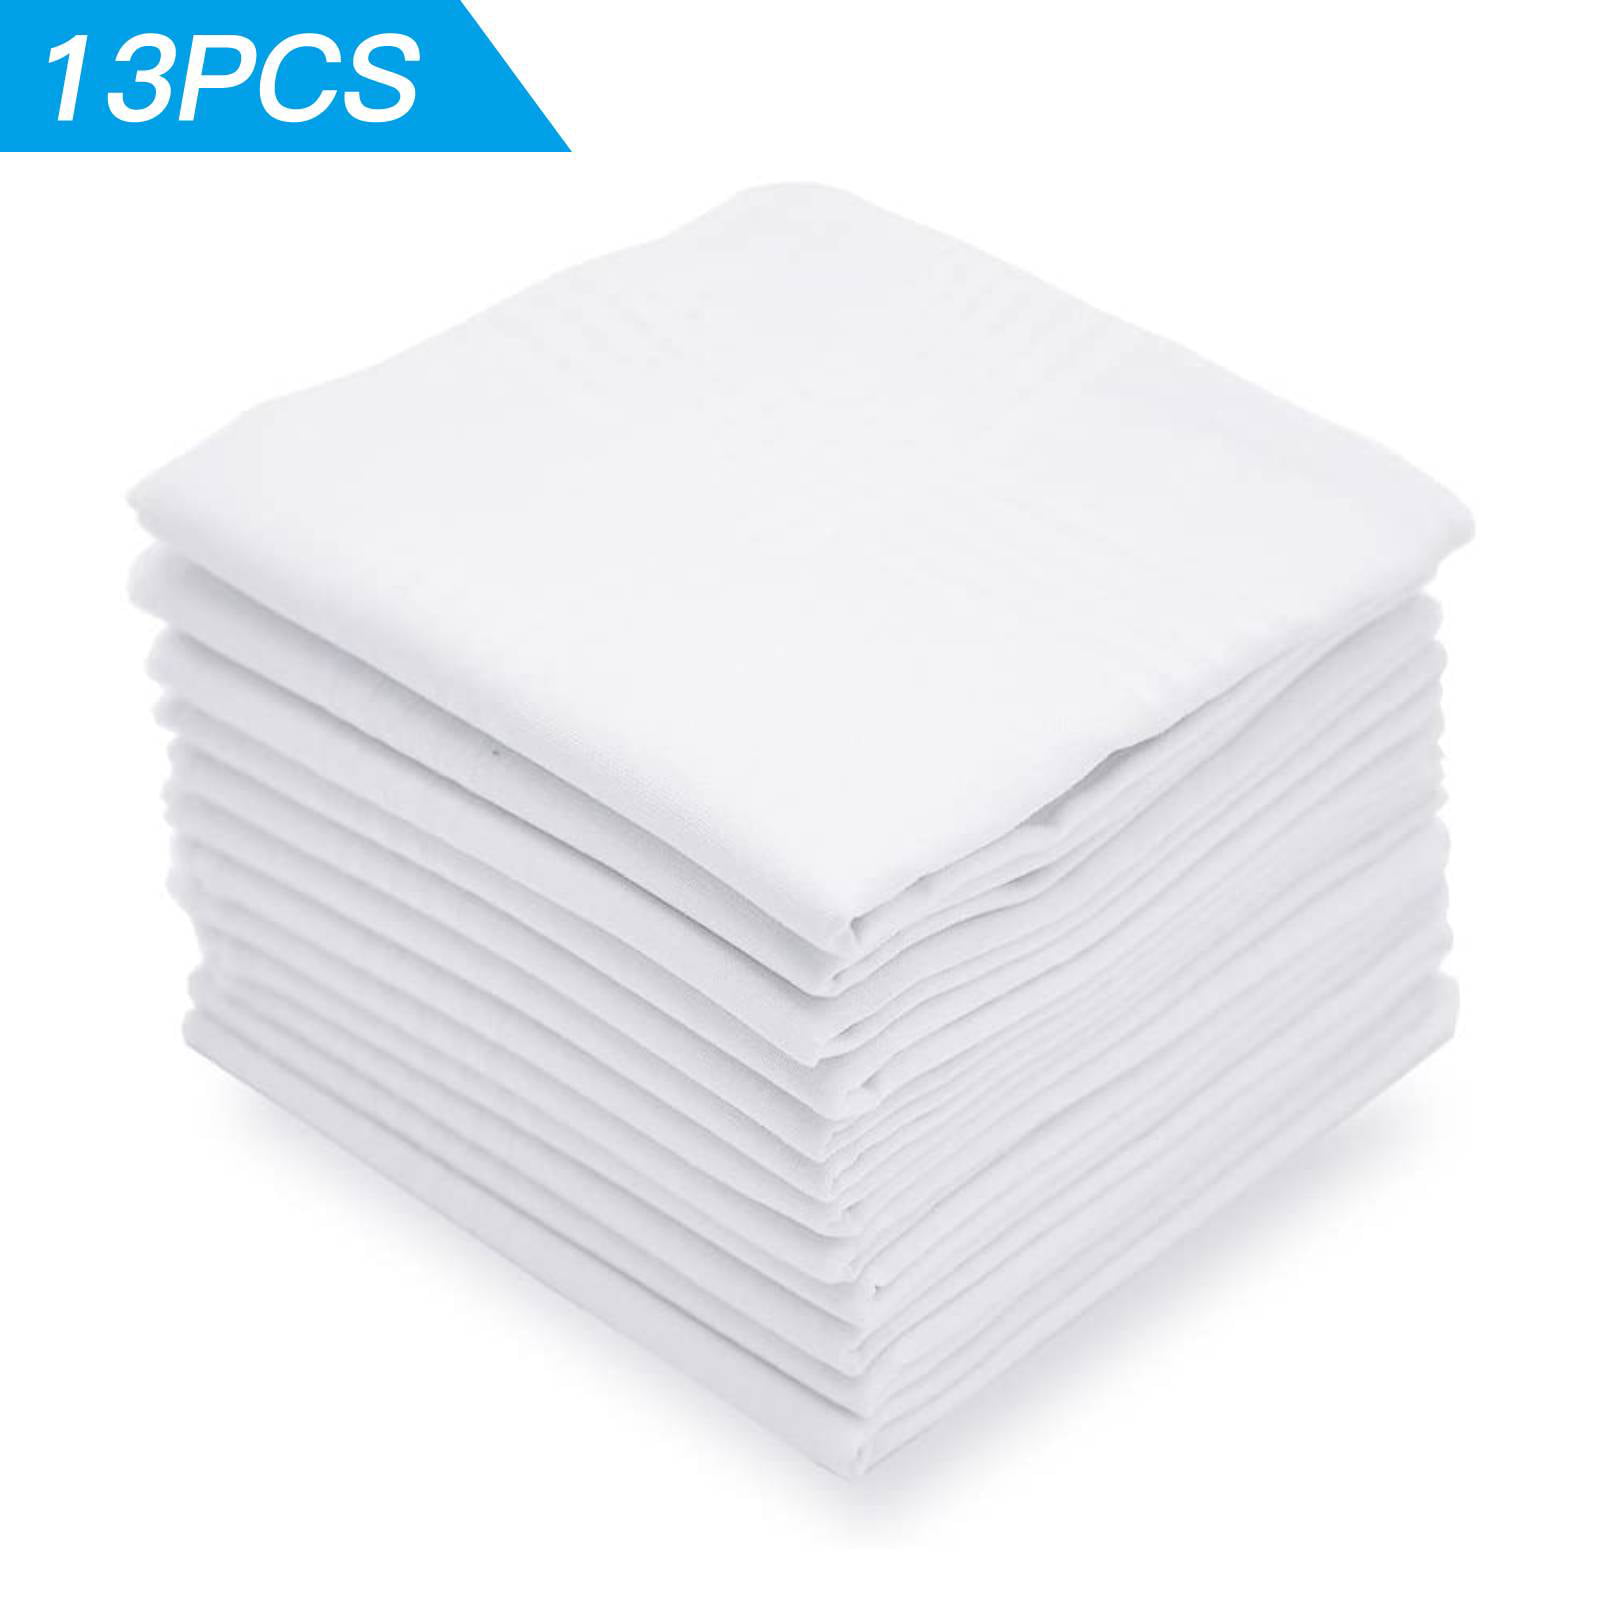 13pcs Men's Pure Cotton Handkerchiefs White Men's Cotton Handkerchiefs Gift  Set Fashion Classic and Elegant Hankies, Machine Washable Absorbent and  Hypoallergenic Hanky (15*15in) - Walmart.com